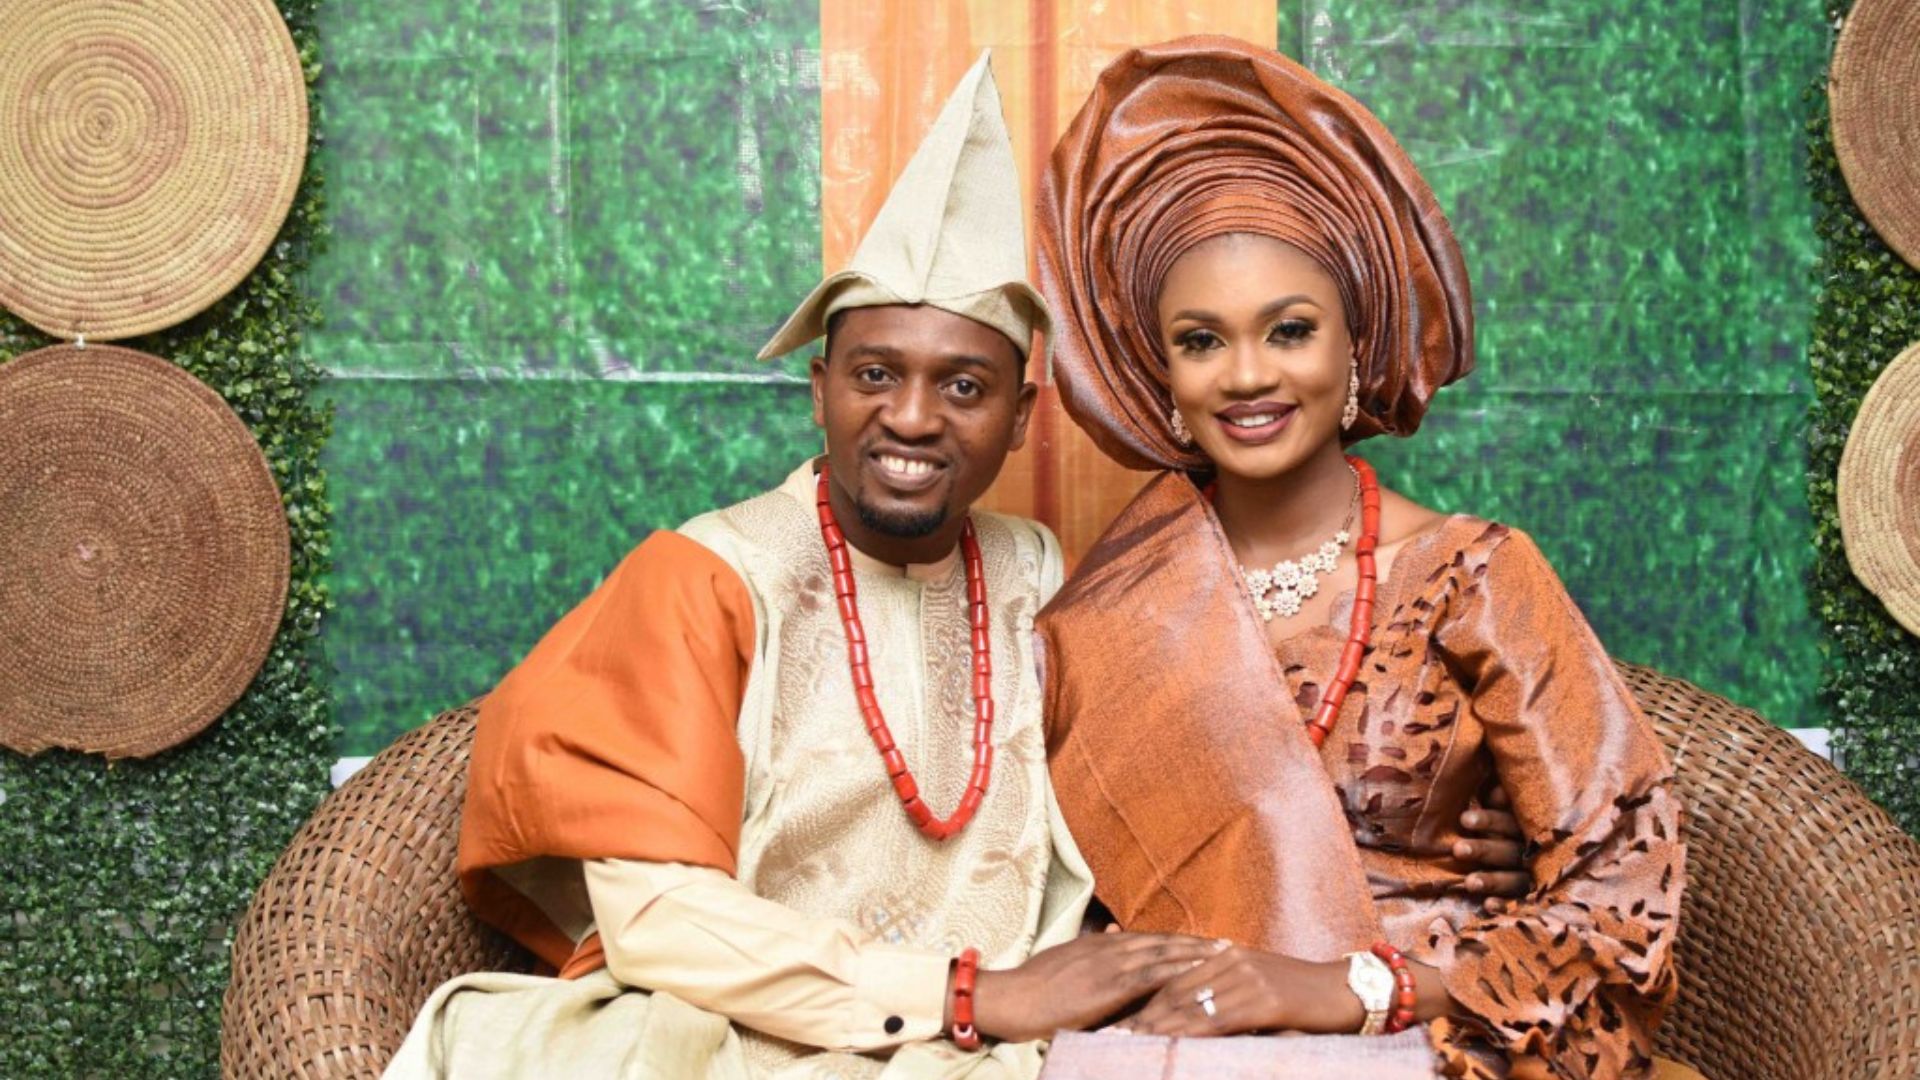 Olabode Adigun and his wife Oluwatobi. /CGTN